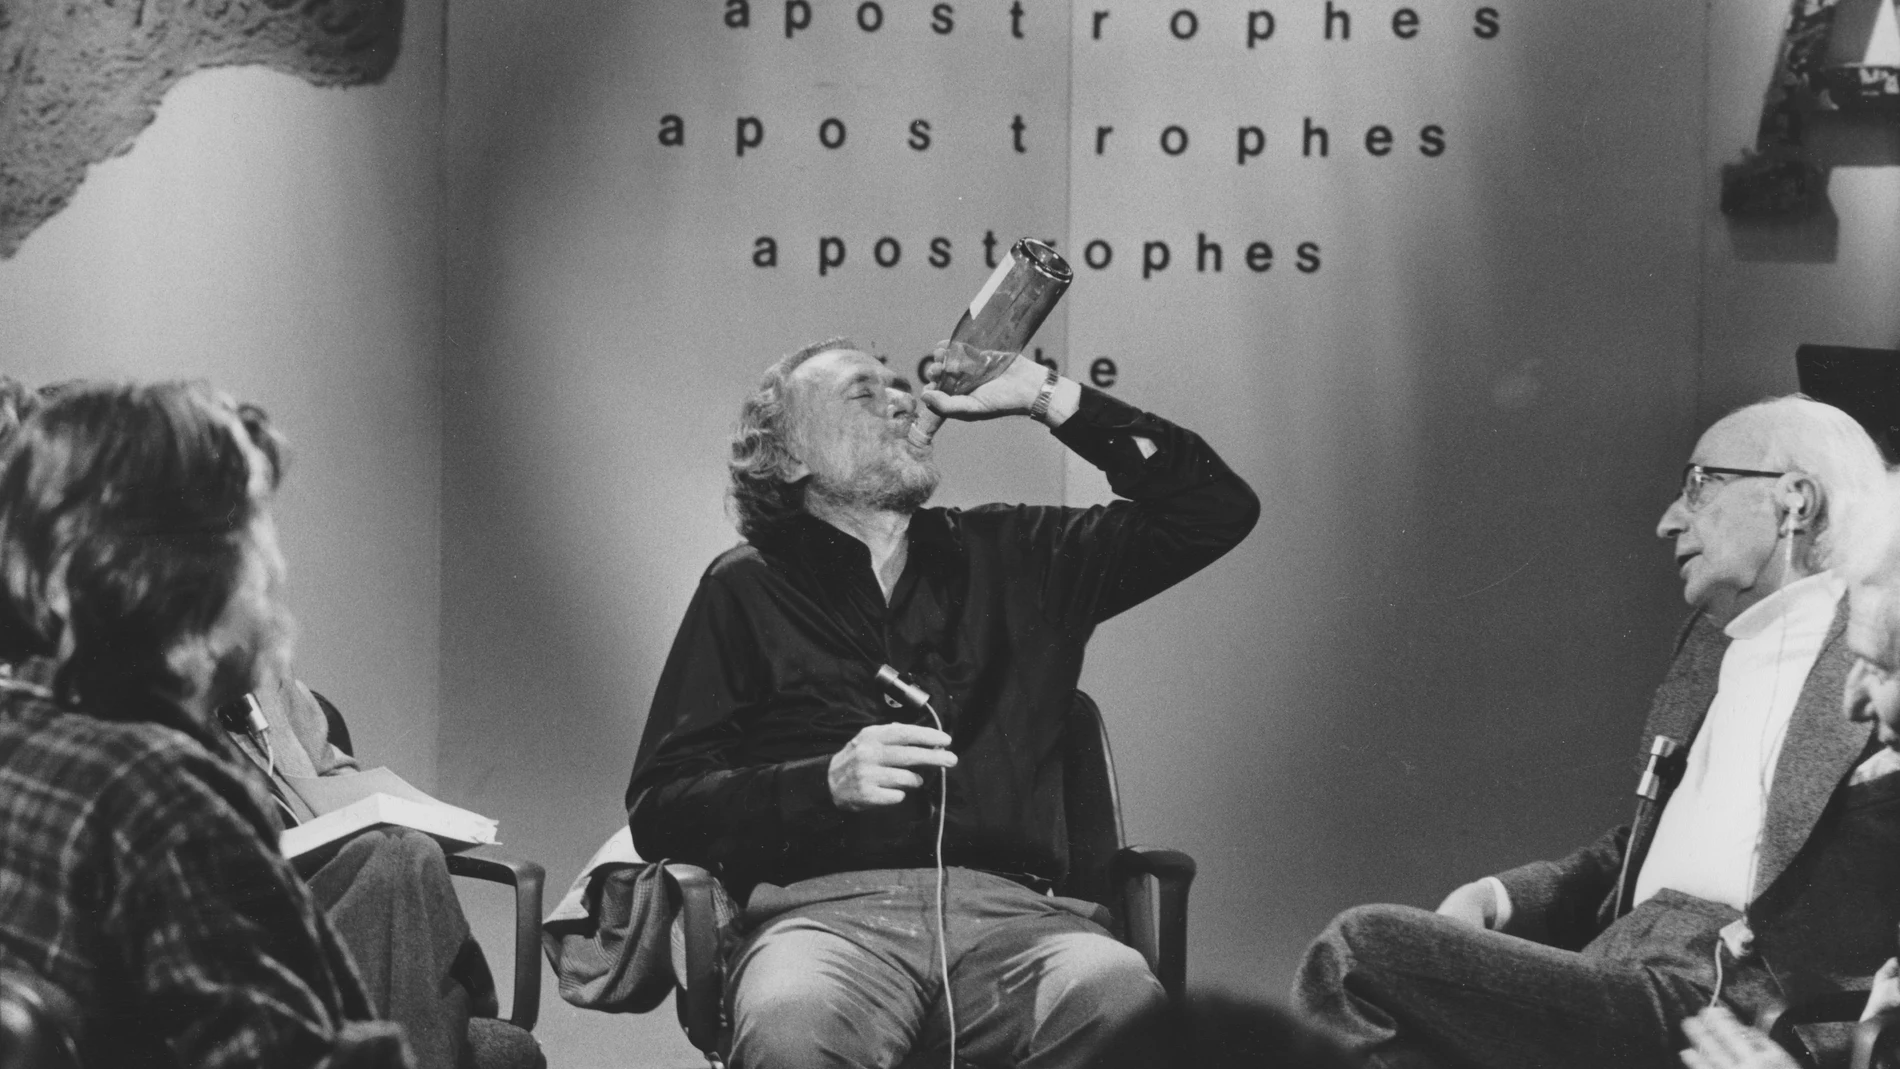 Bukowski escandalizó a todos cuando apareció bebiendo en el programa "Apostrophes" de Bernard Pivot